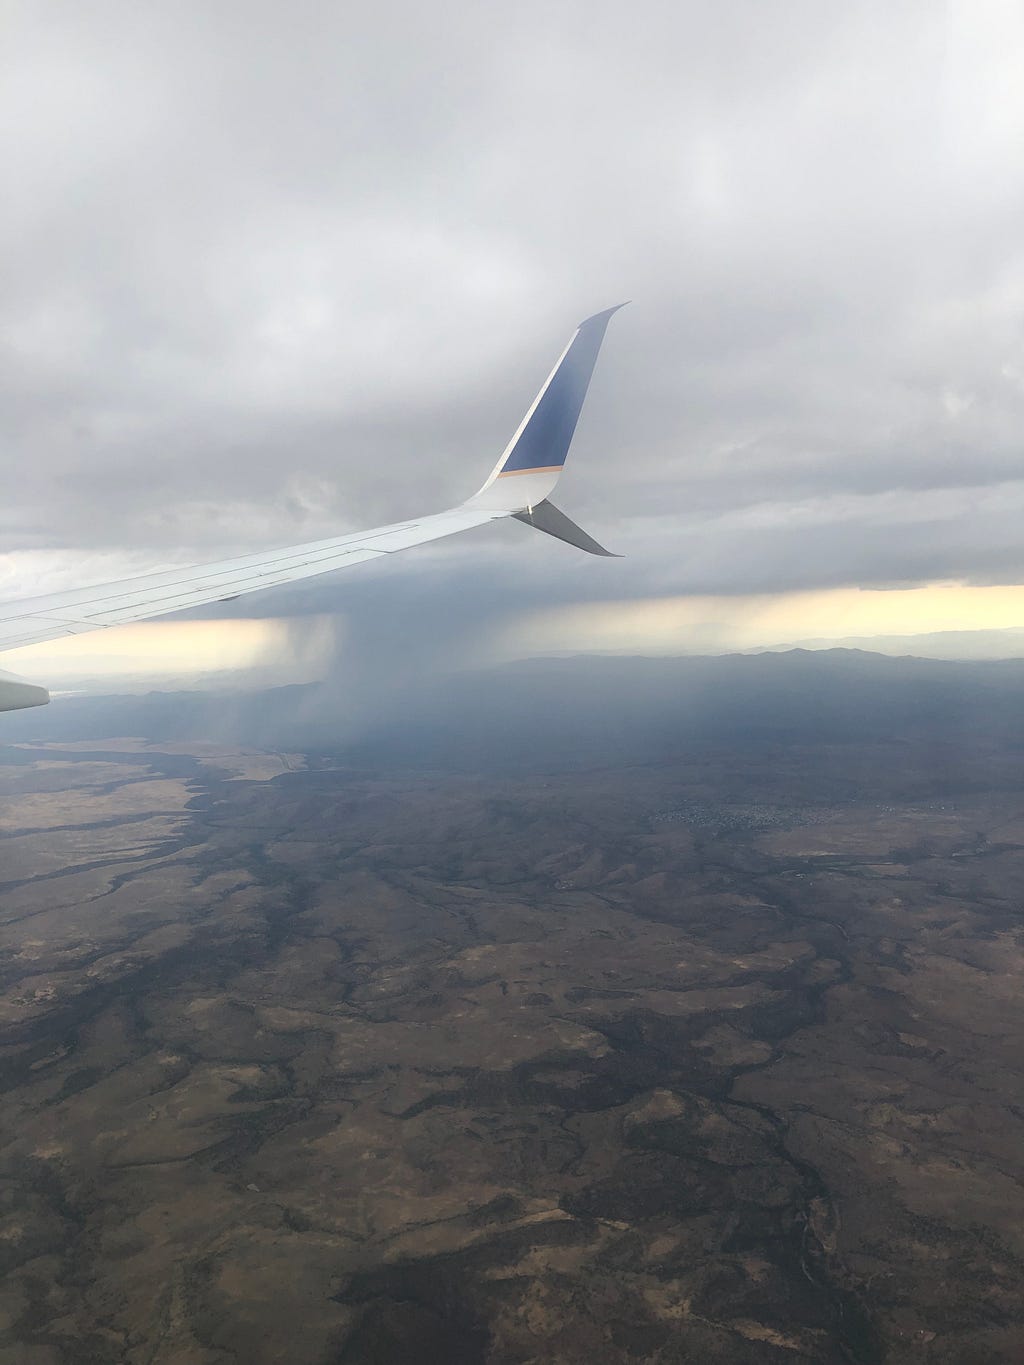 Rain clouds over Northern Arizona